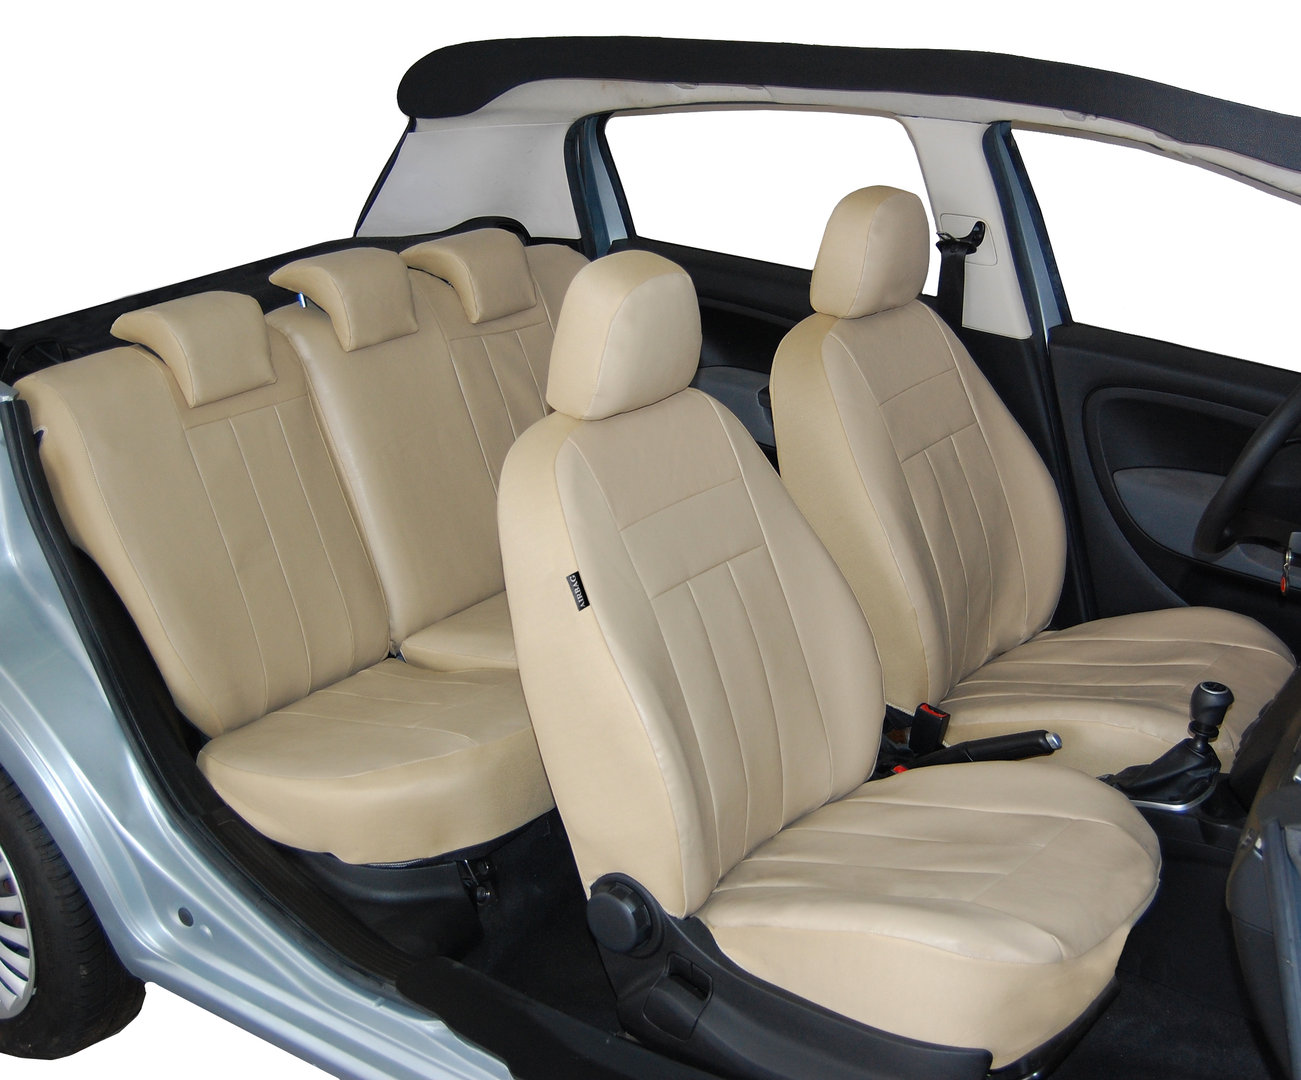 9 Stück Plüsch Autositzbezug, für Ford Fiesta MK6 Winter Kaninchenfell  Sitzbezüge vorne und hinten Sitzkissen Weich und flauschig,B : :  Auto & Motorrad